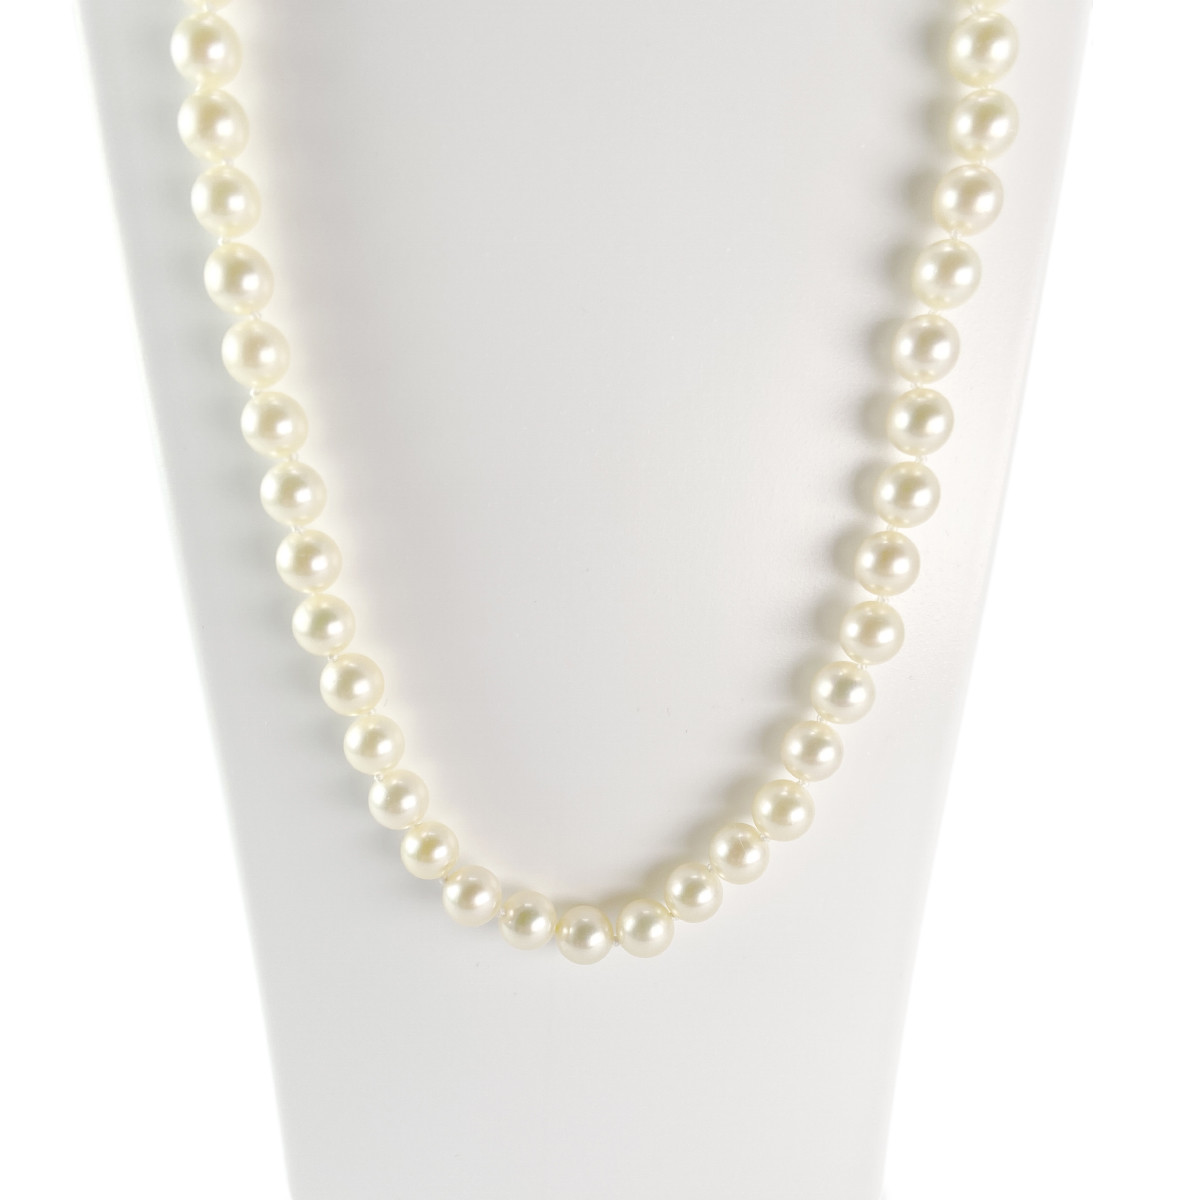 Collier d'occasion or 750 jaune perles du japon 48 cm